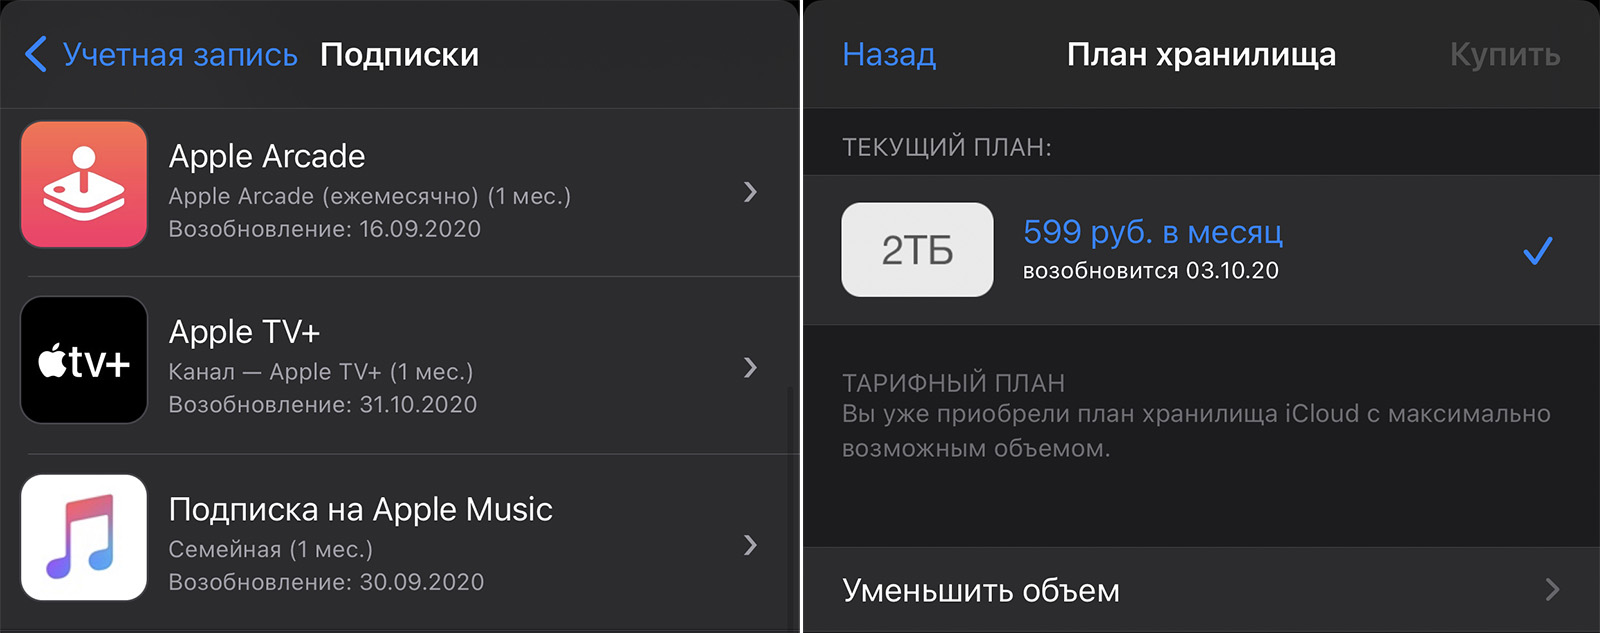 https://www.iphones.ru/wp-content/uploads/2020/09/apple-one-subscription-price-in-russia-analytics-1-iphonesru.jpg